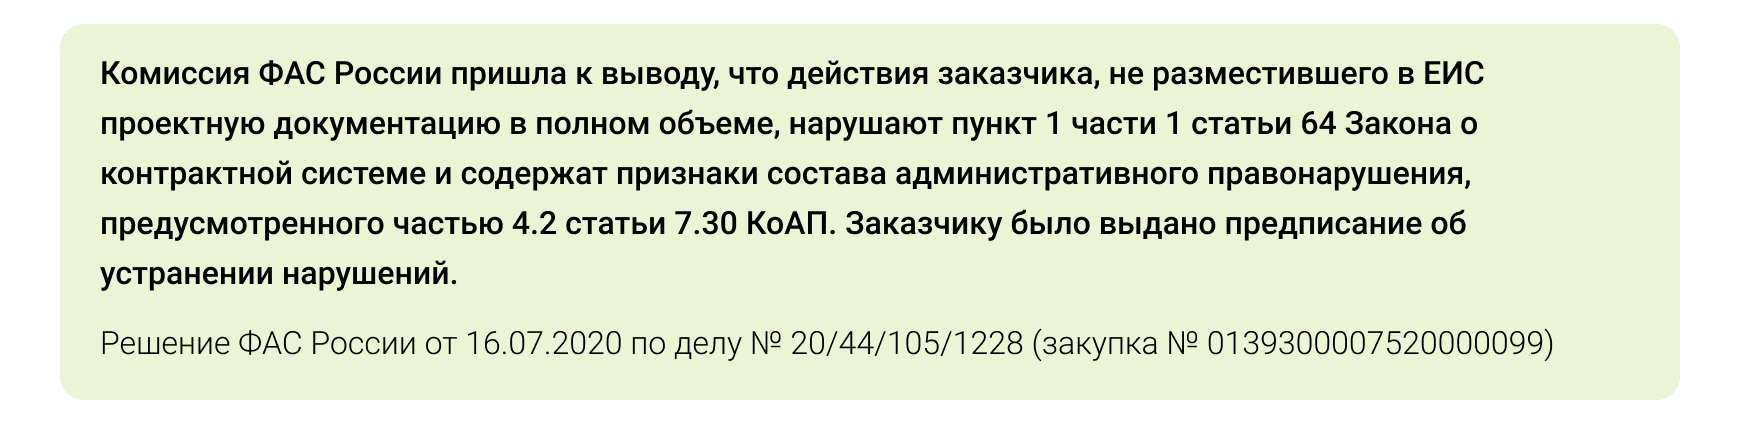 Решение ФАС России от 16.07.2020